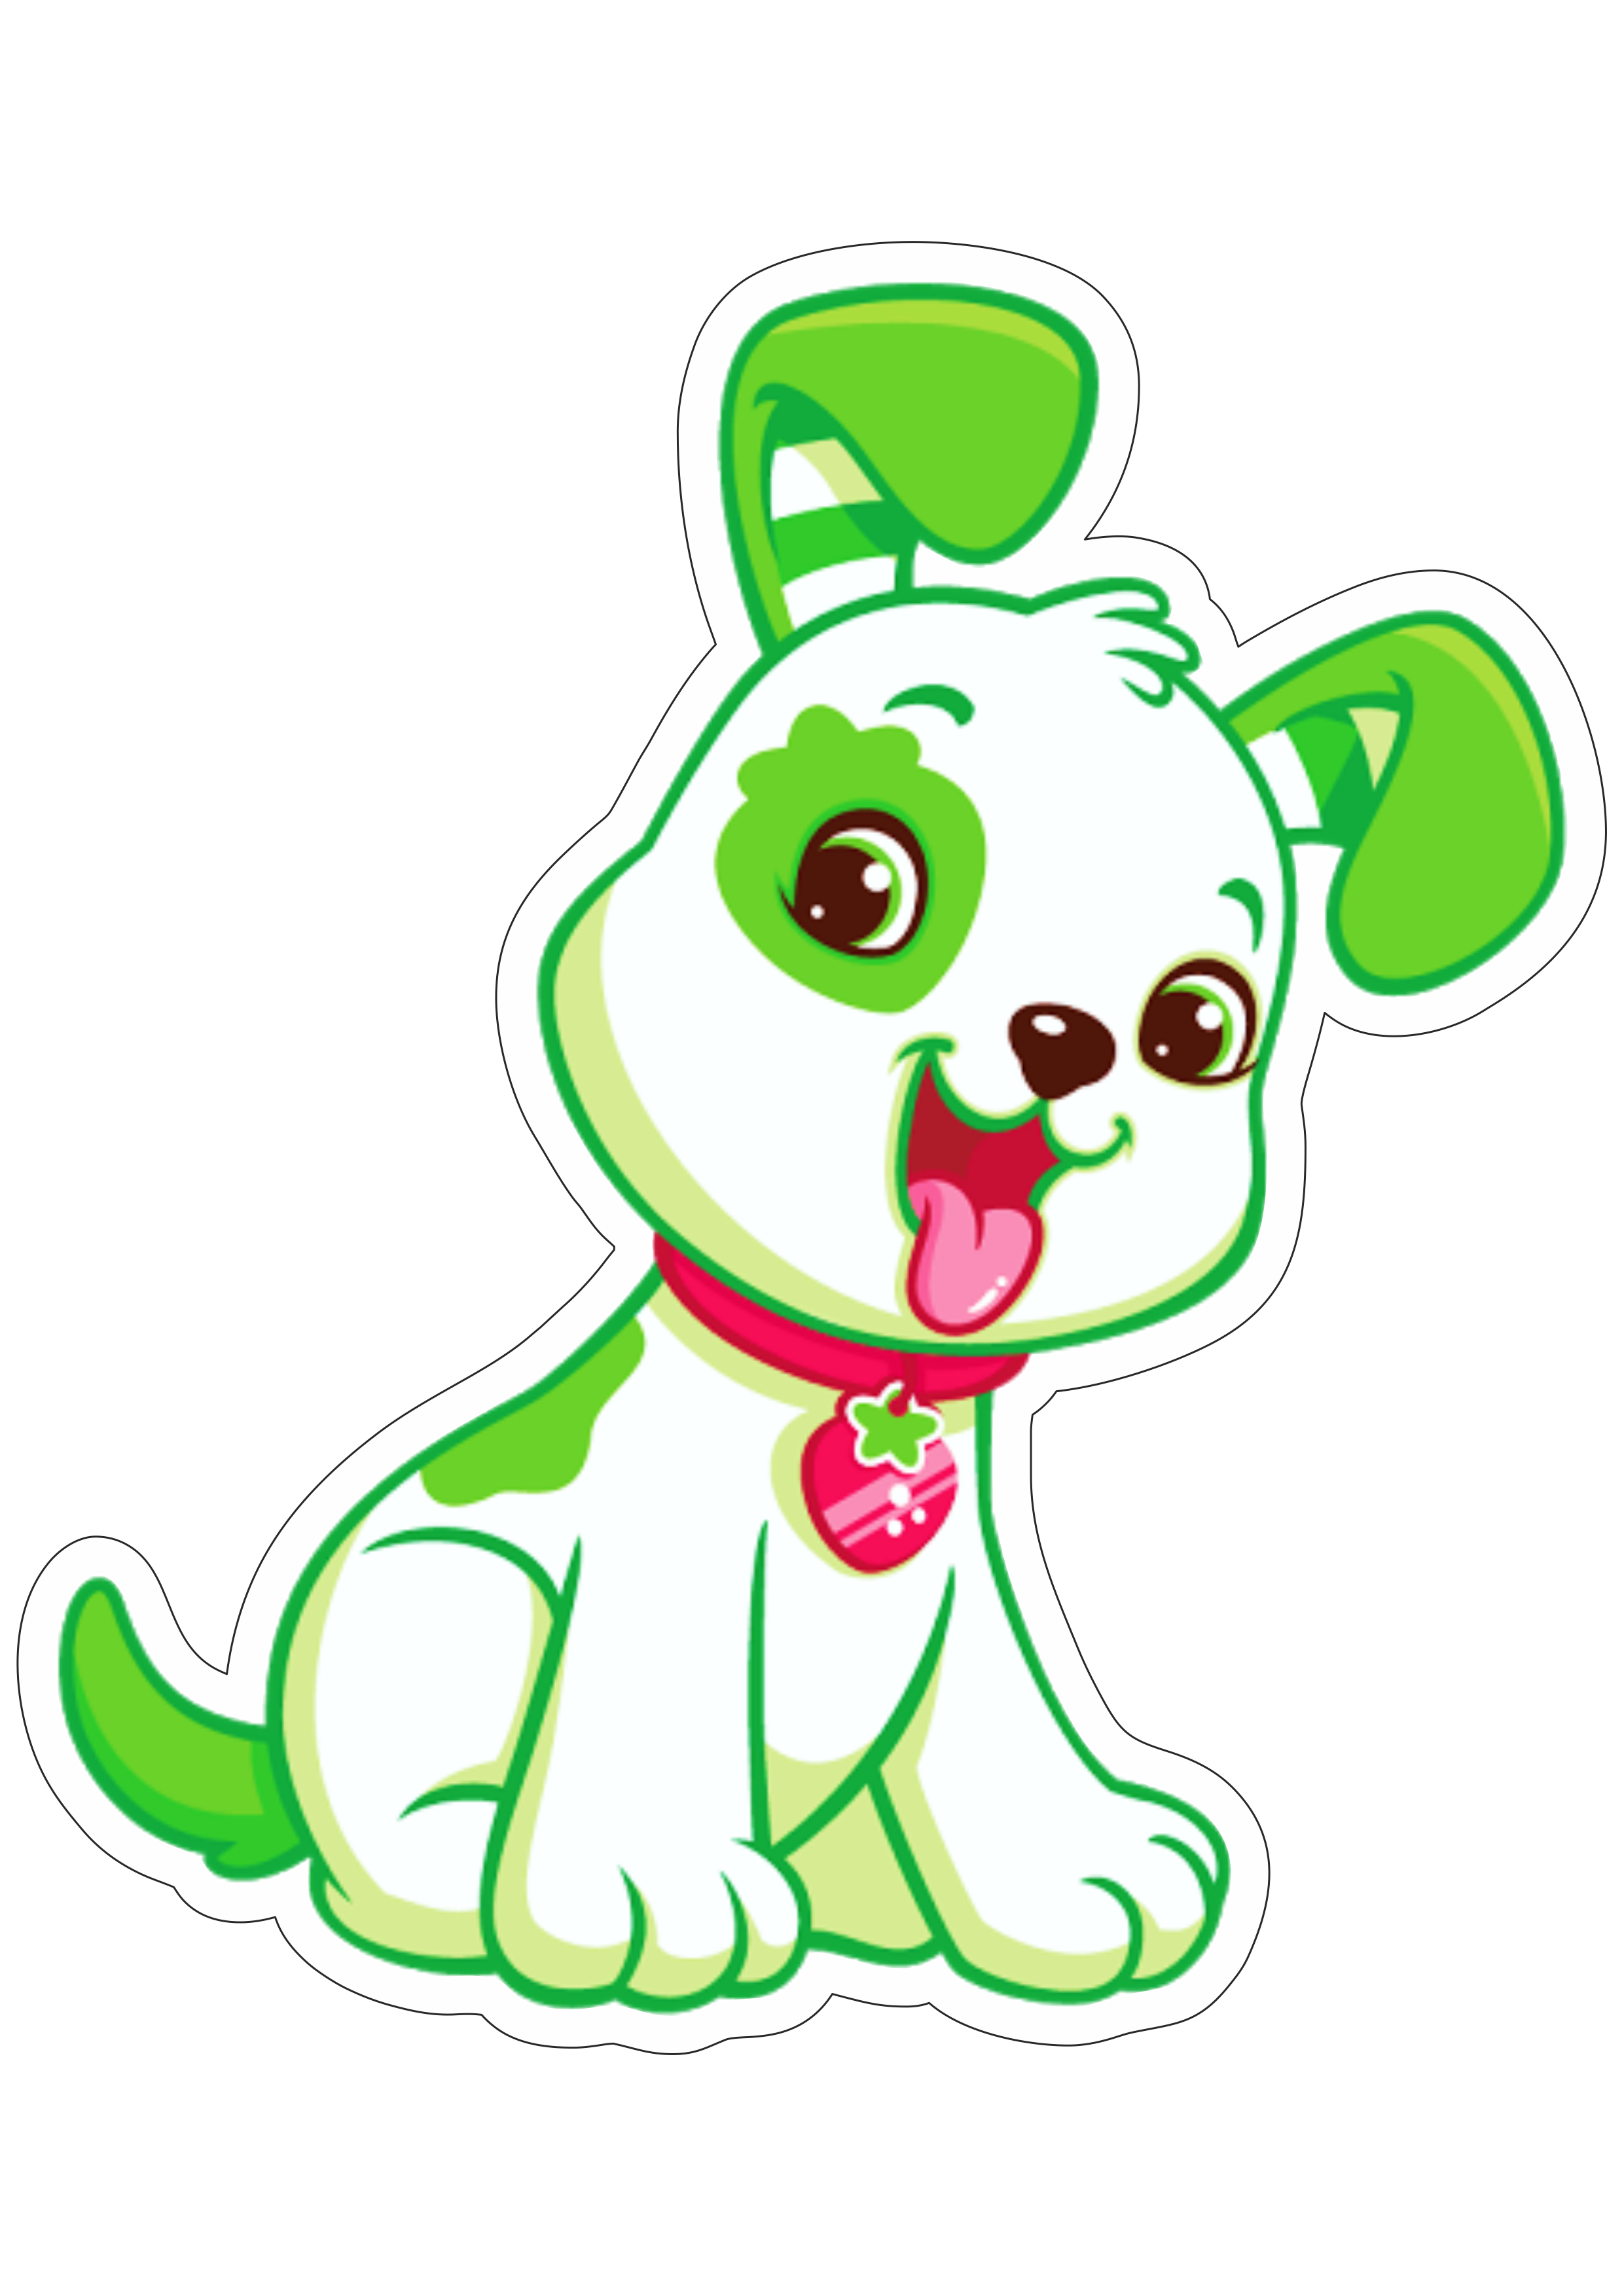 Moranguinho cachorrinho verde imagens fundo transparente com contorno png